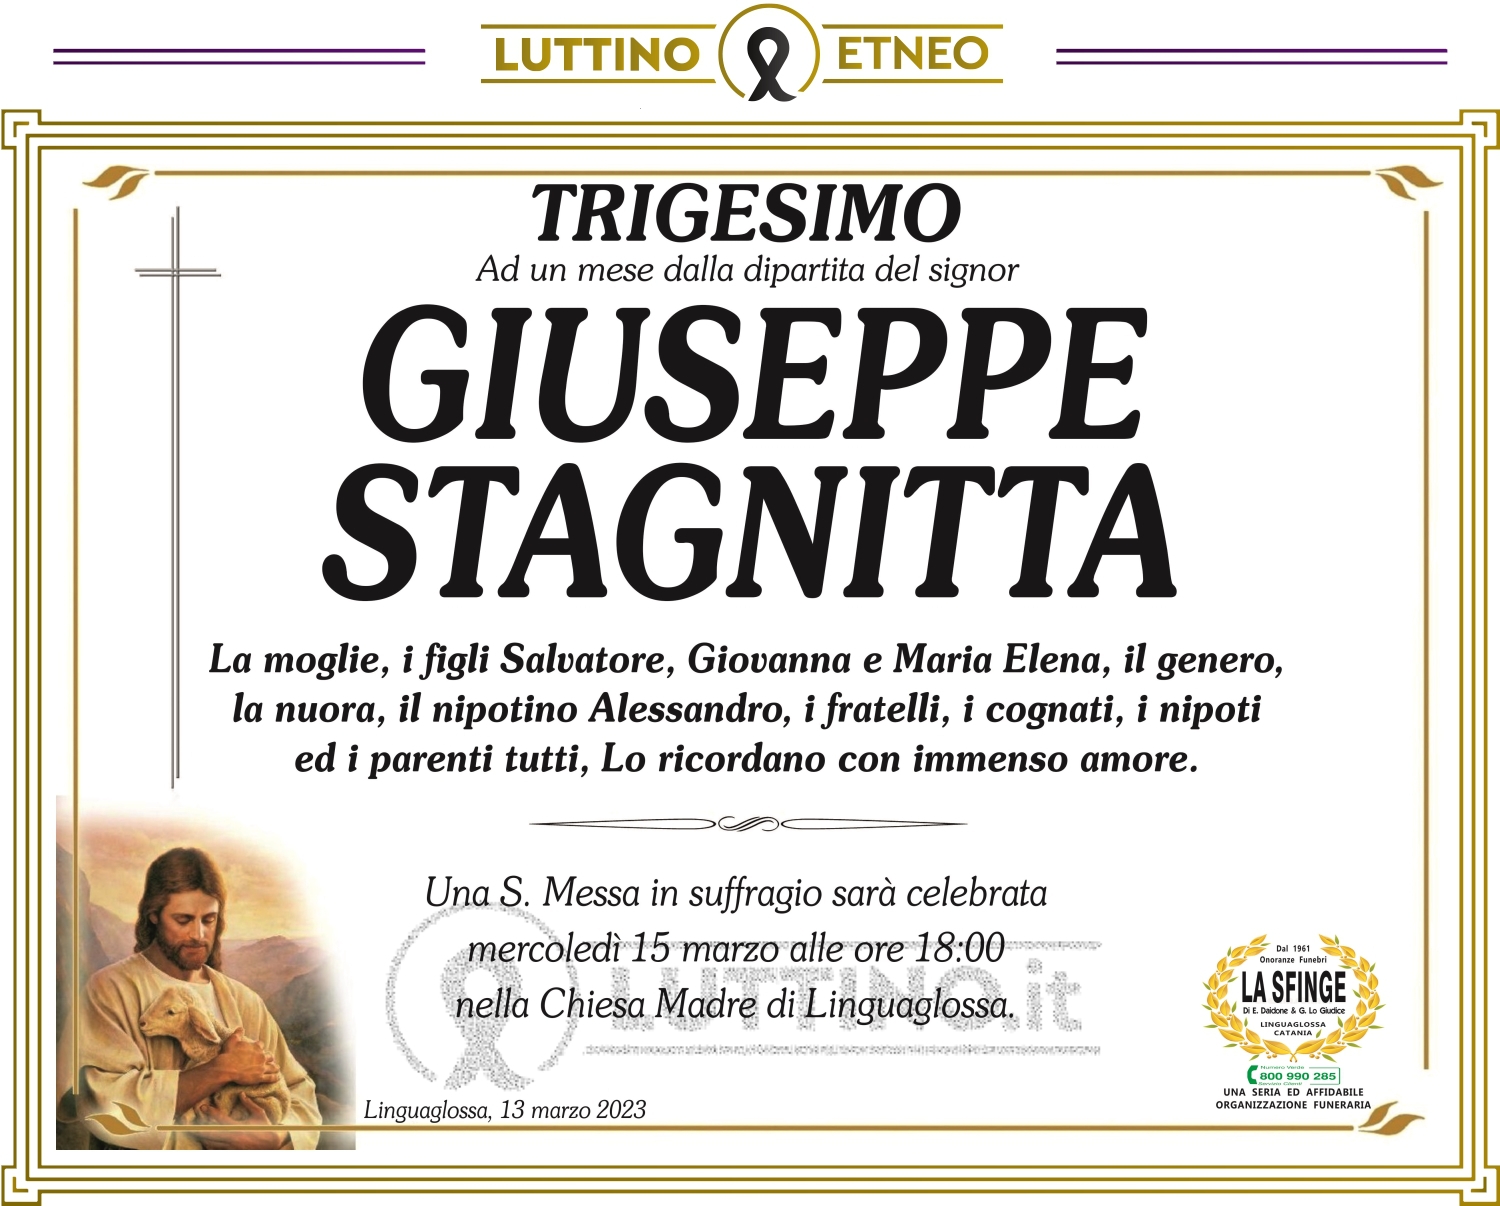 Giuseppe Stagnitta